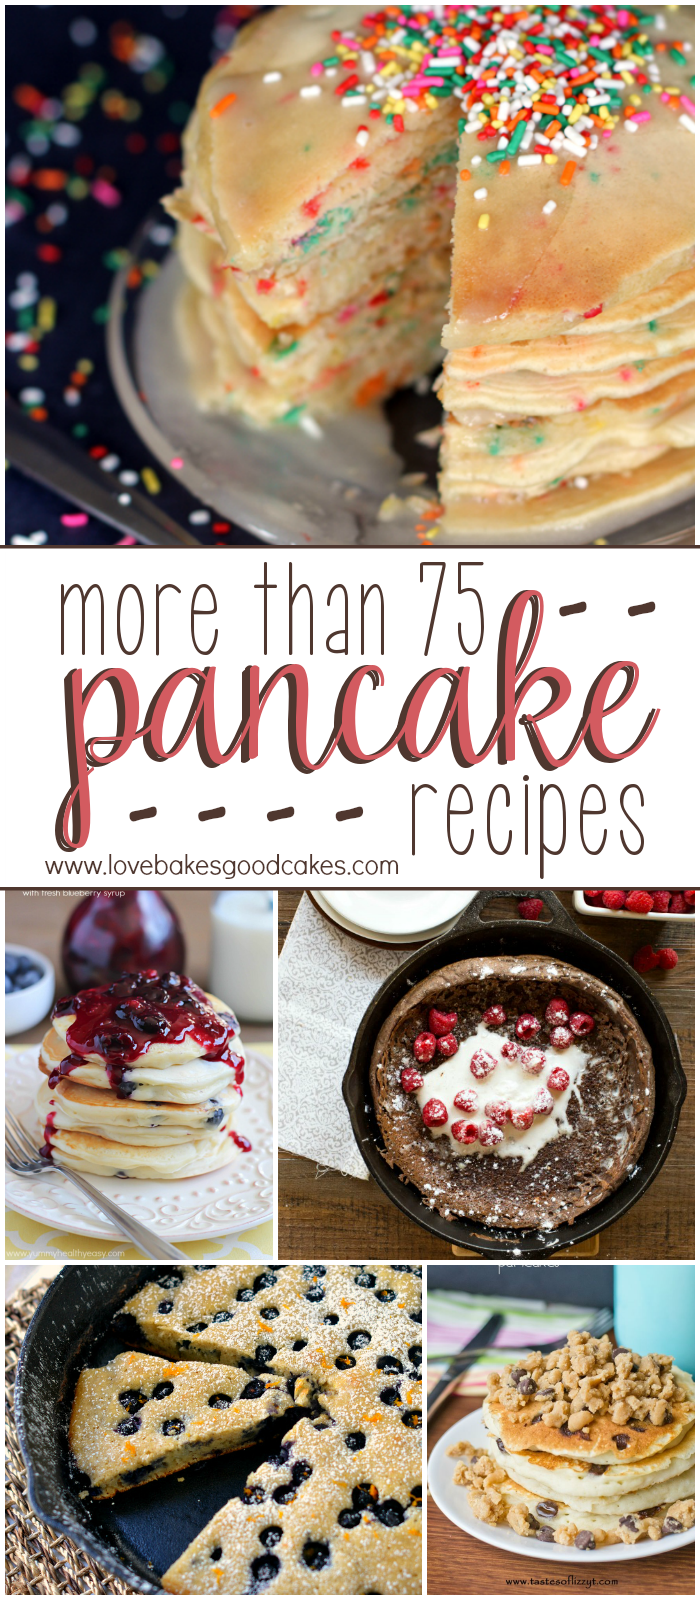 More than 75 PANCAKE recipes collage.